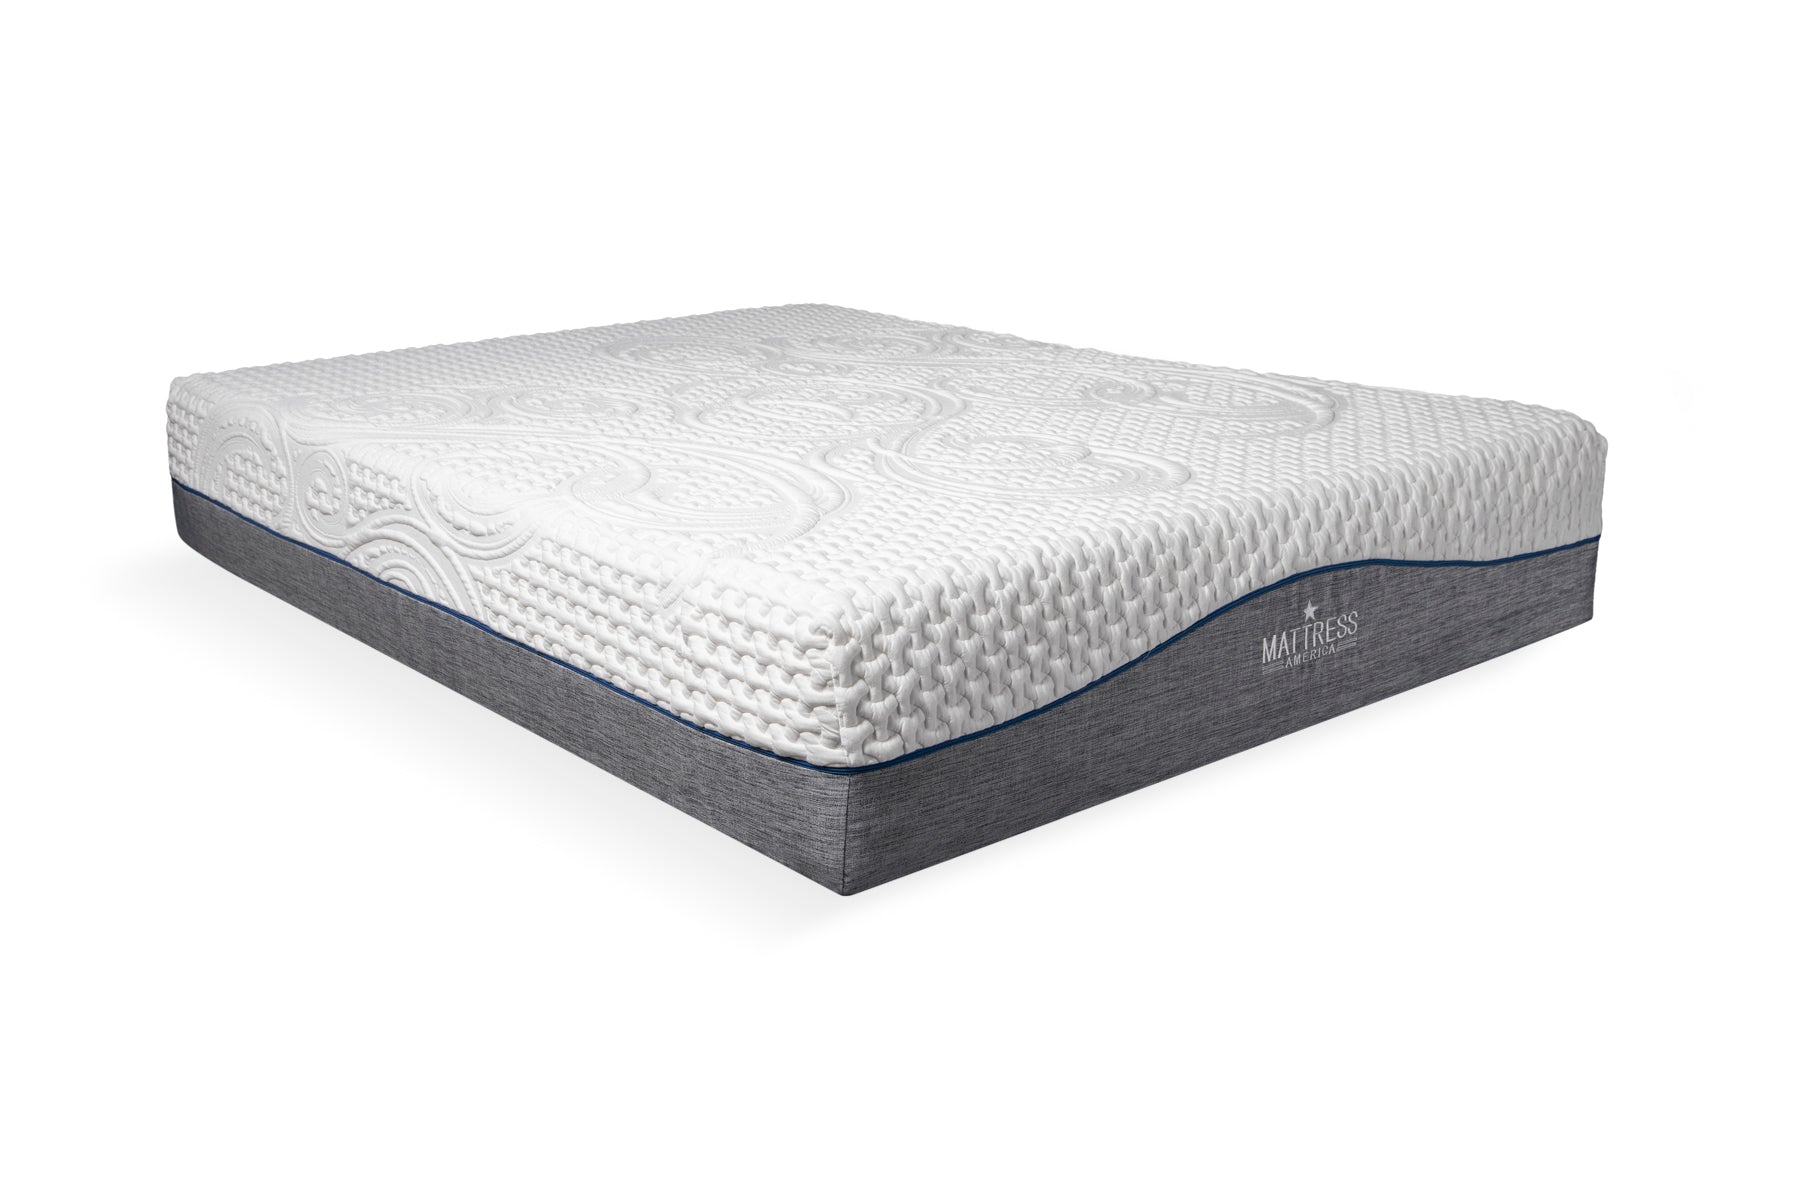 12 inch gel memory foam mattress